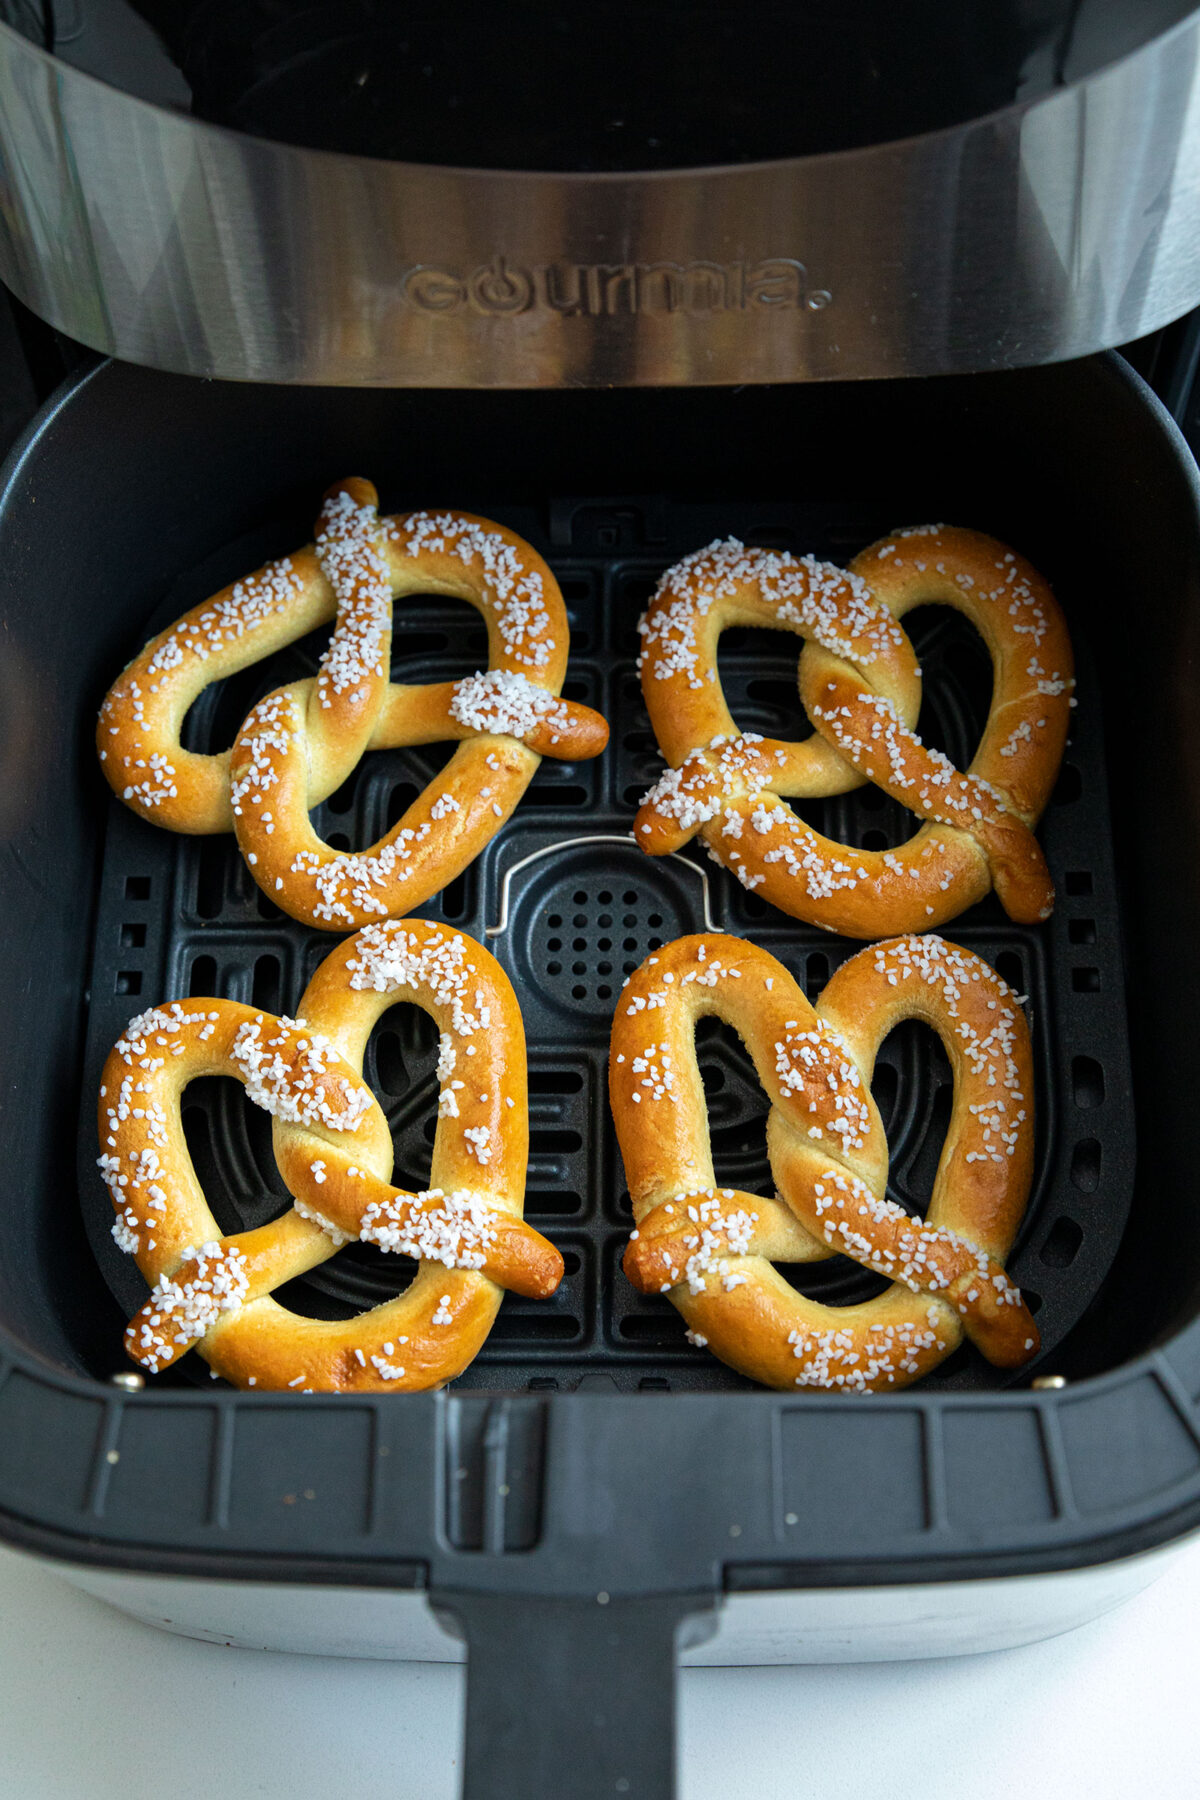 frozen pretzels in air fryer basket